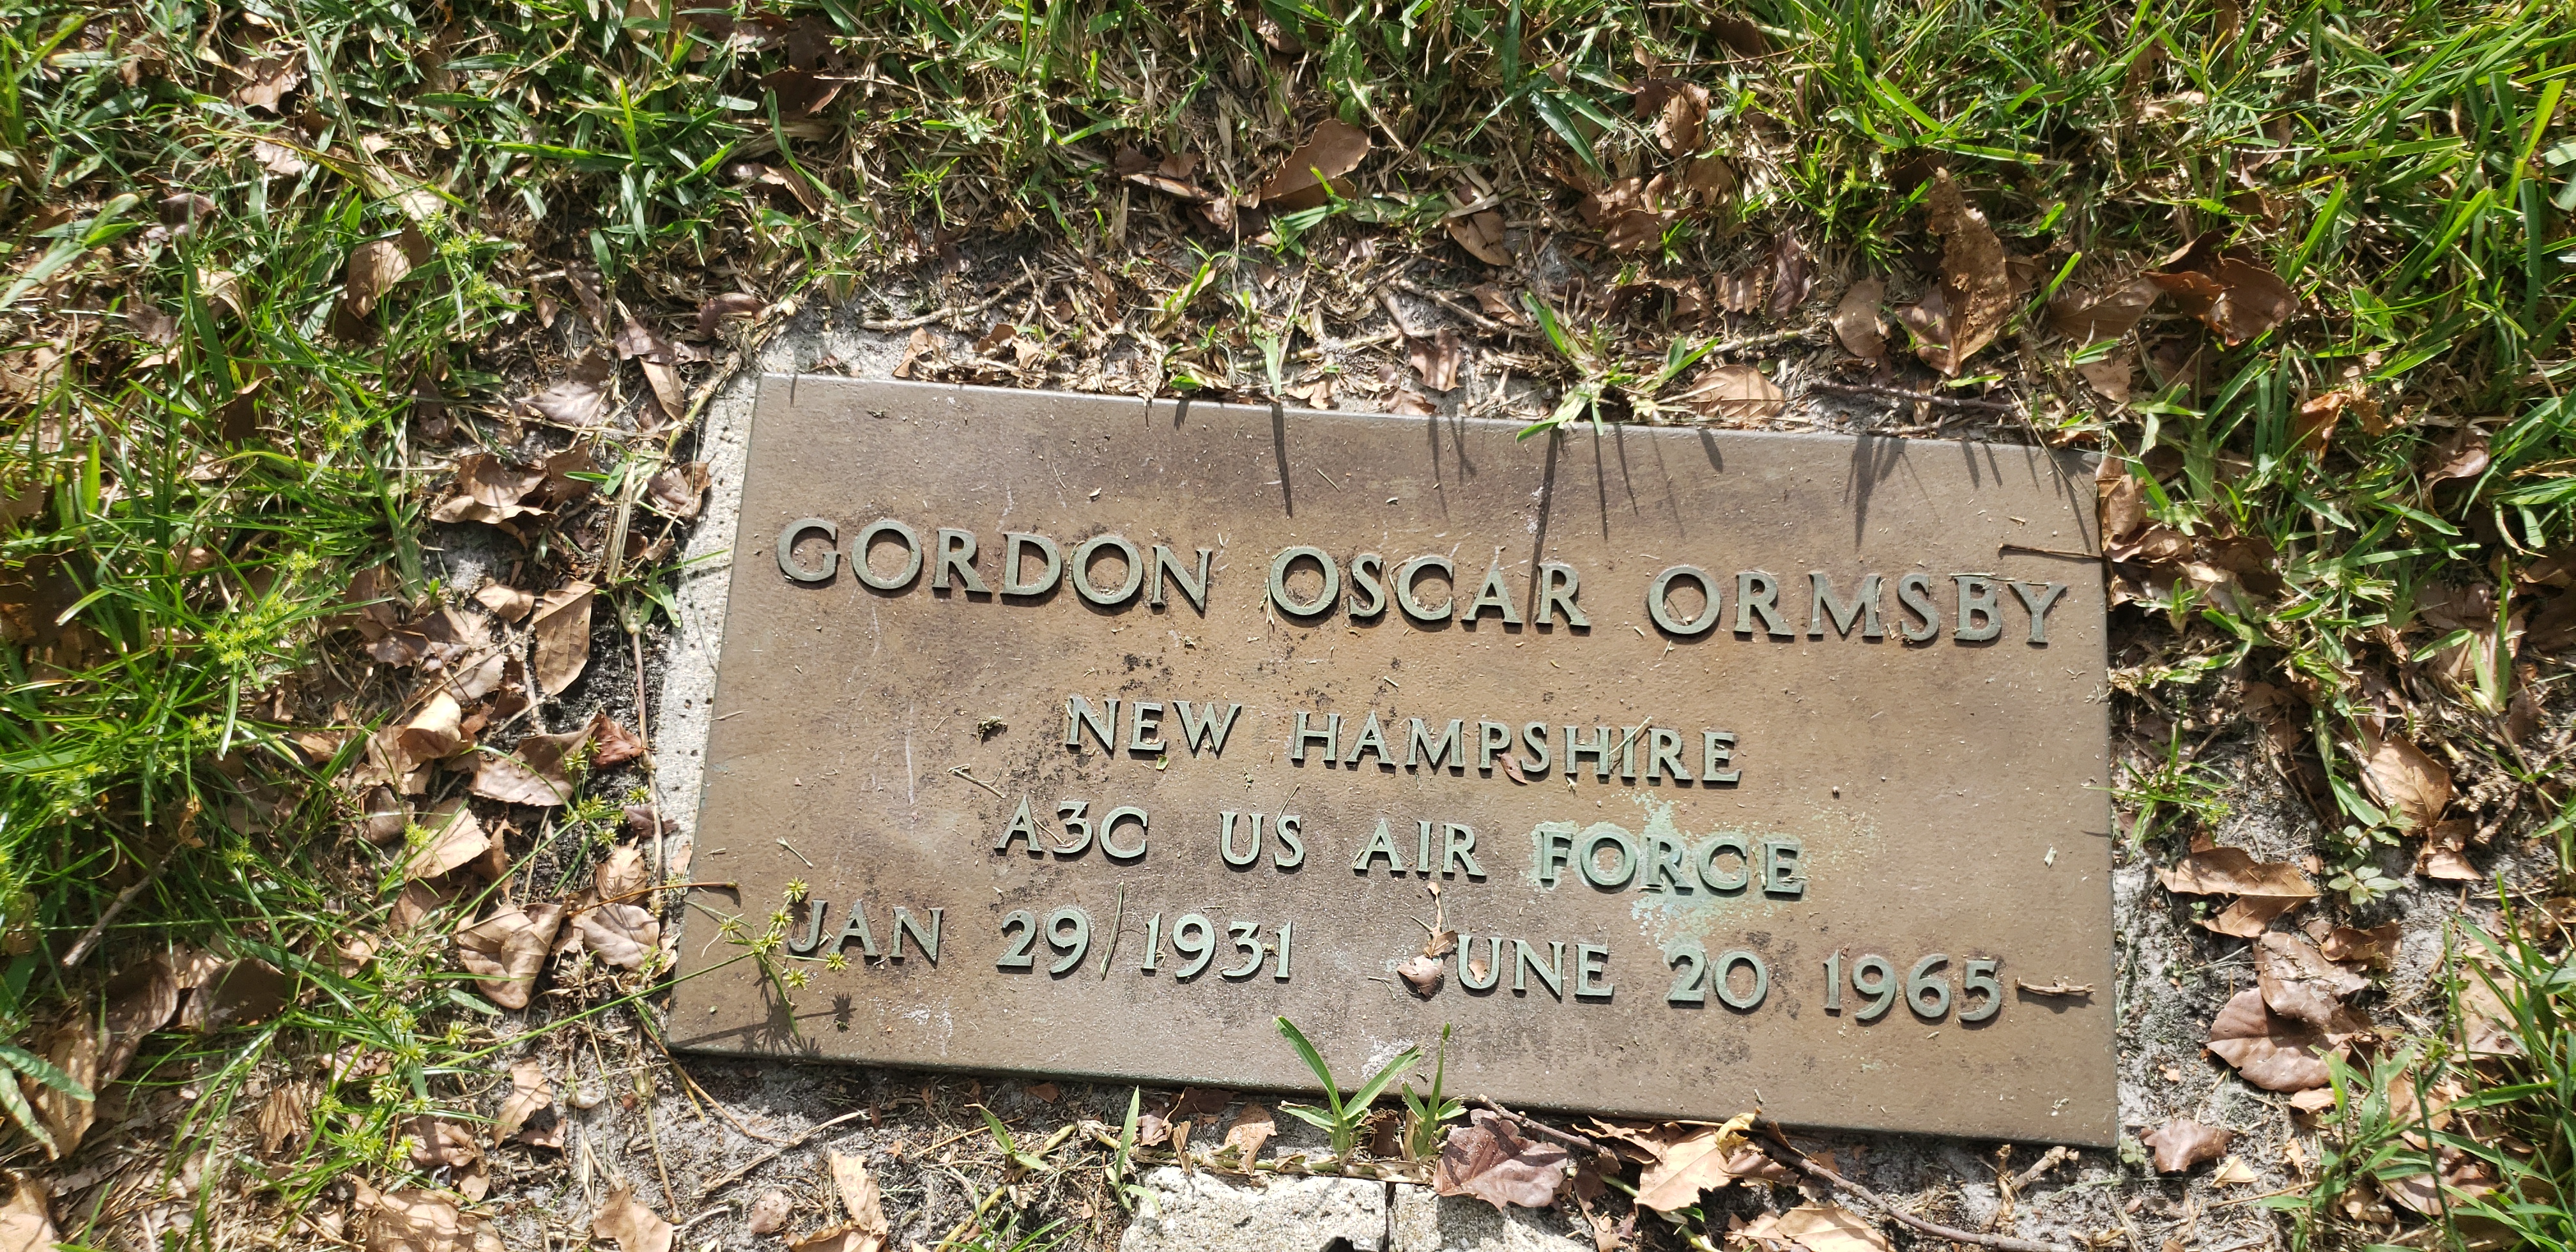 Gordon Oscar Ormsby